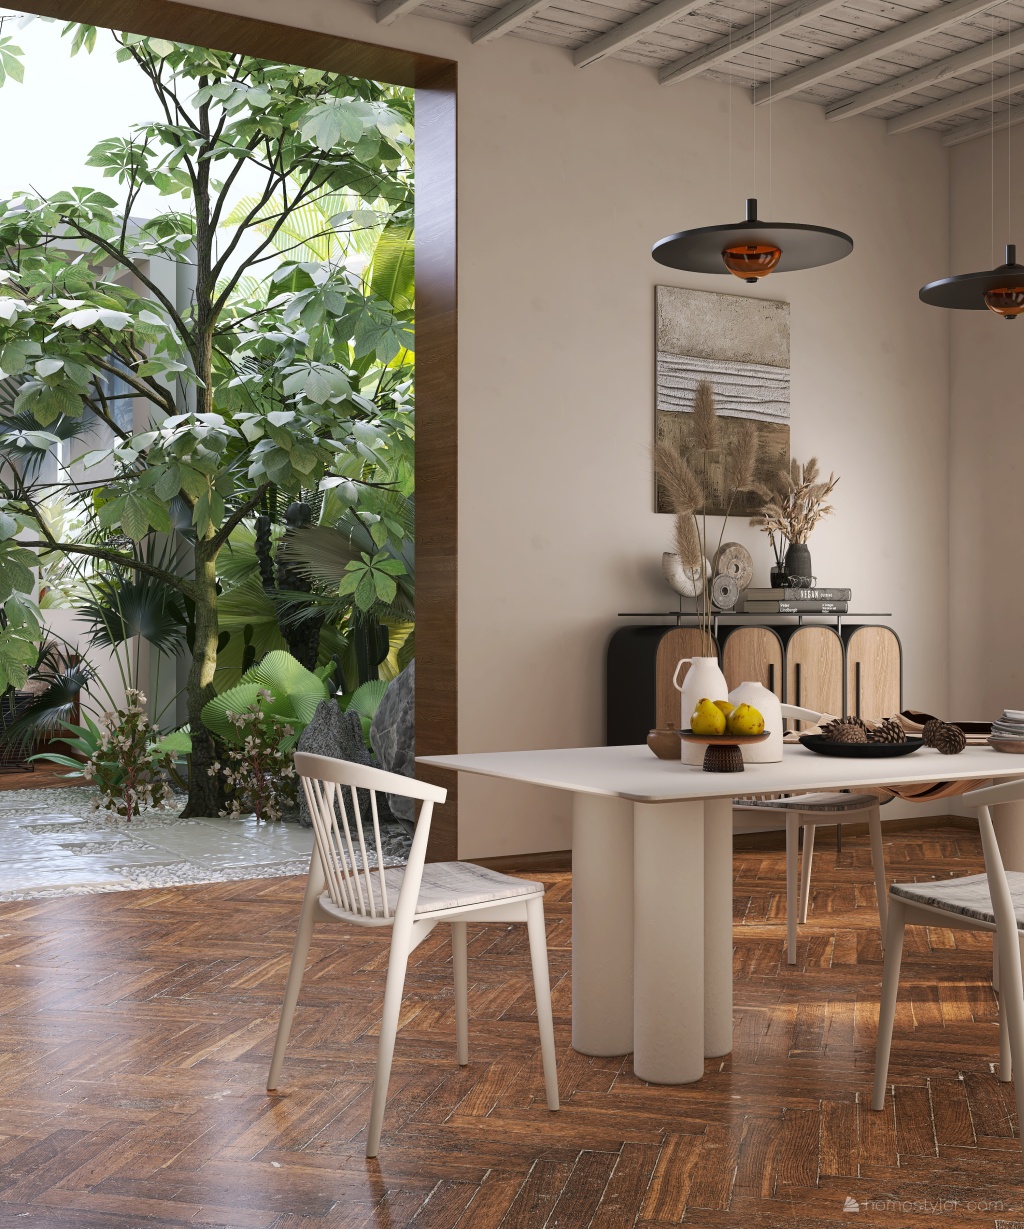 StyleOther ArtDeco TropicalTheme WarmTones WoodTones Dining 3d design renderings